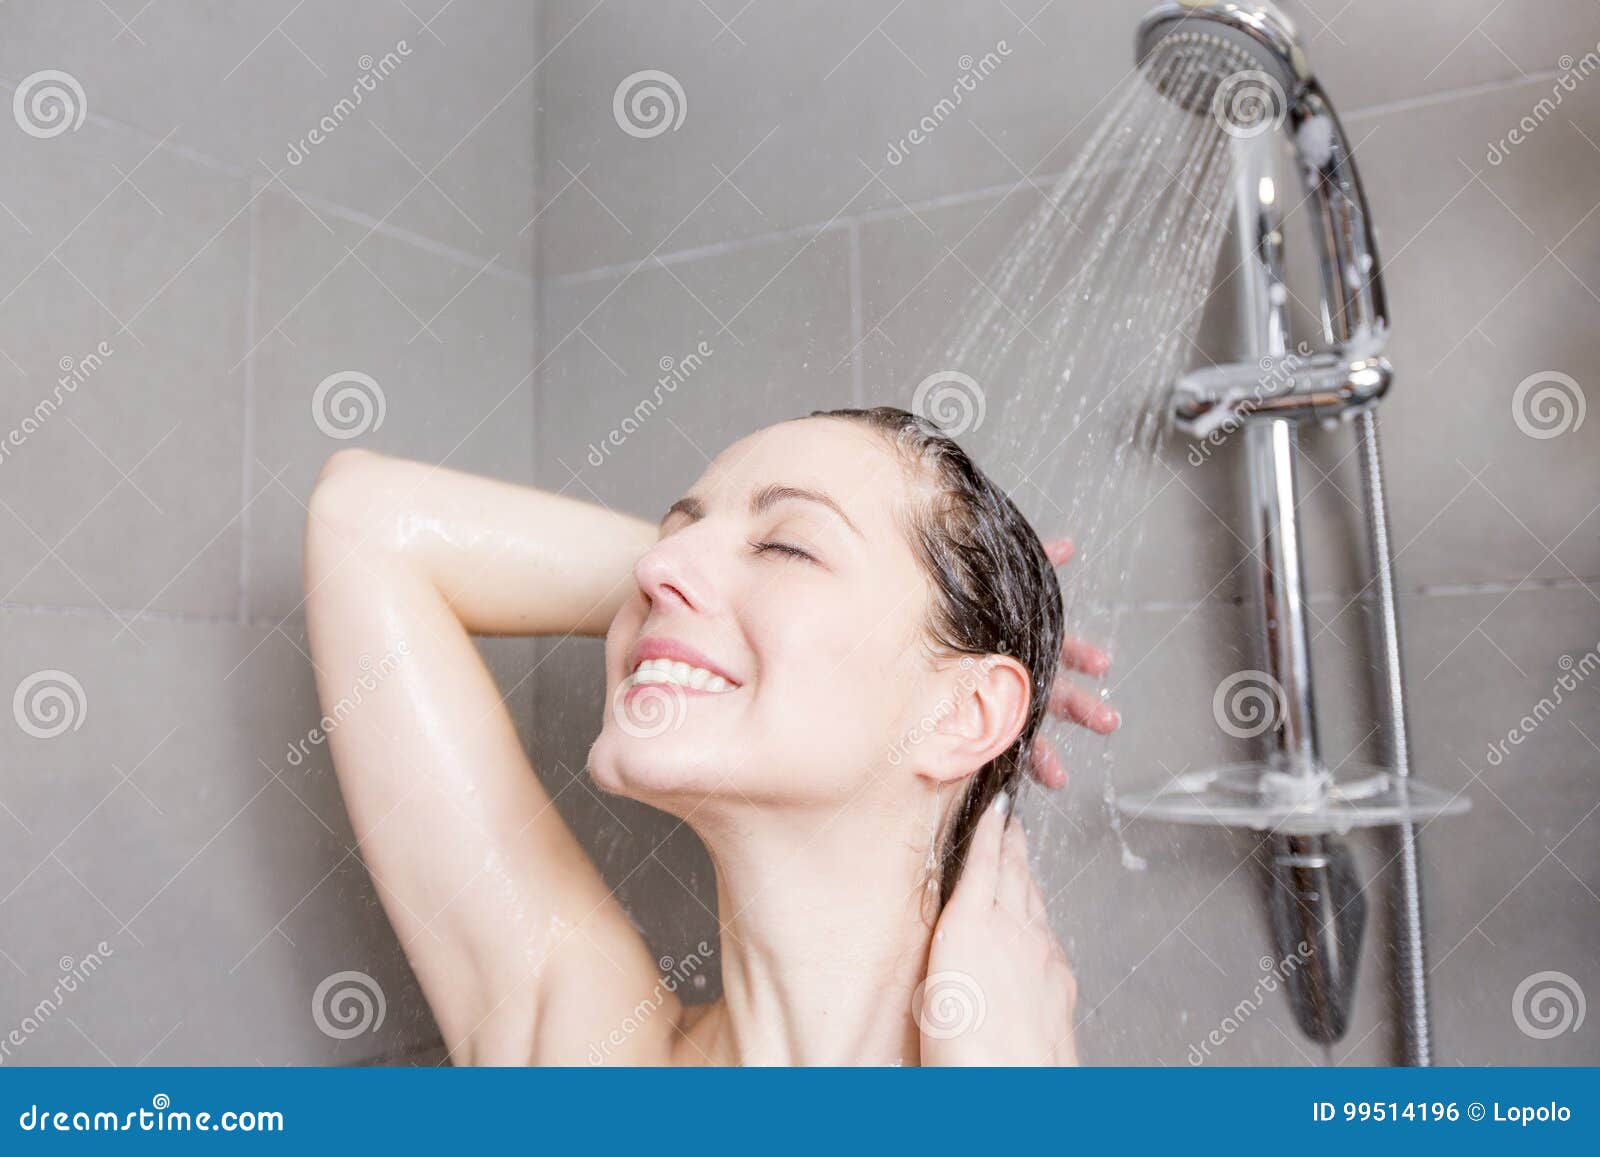 оргазм струей воды в ванной фото 87